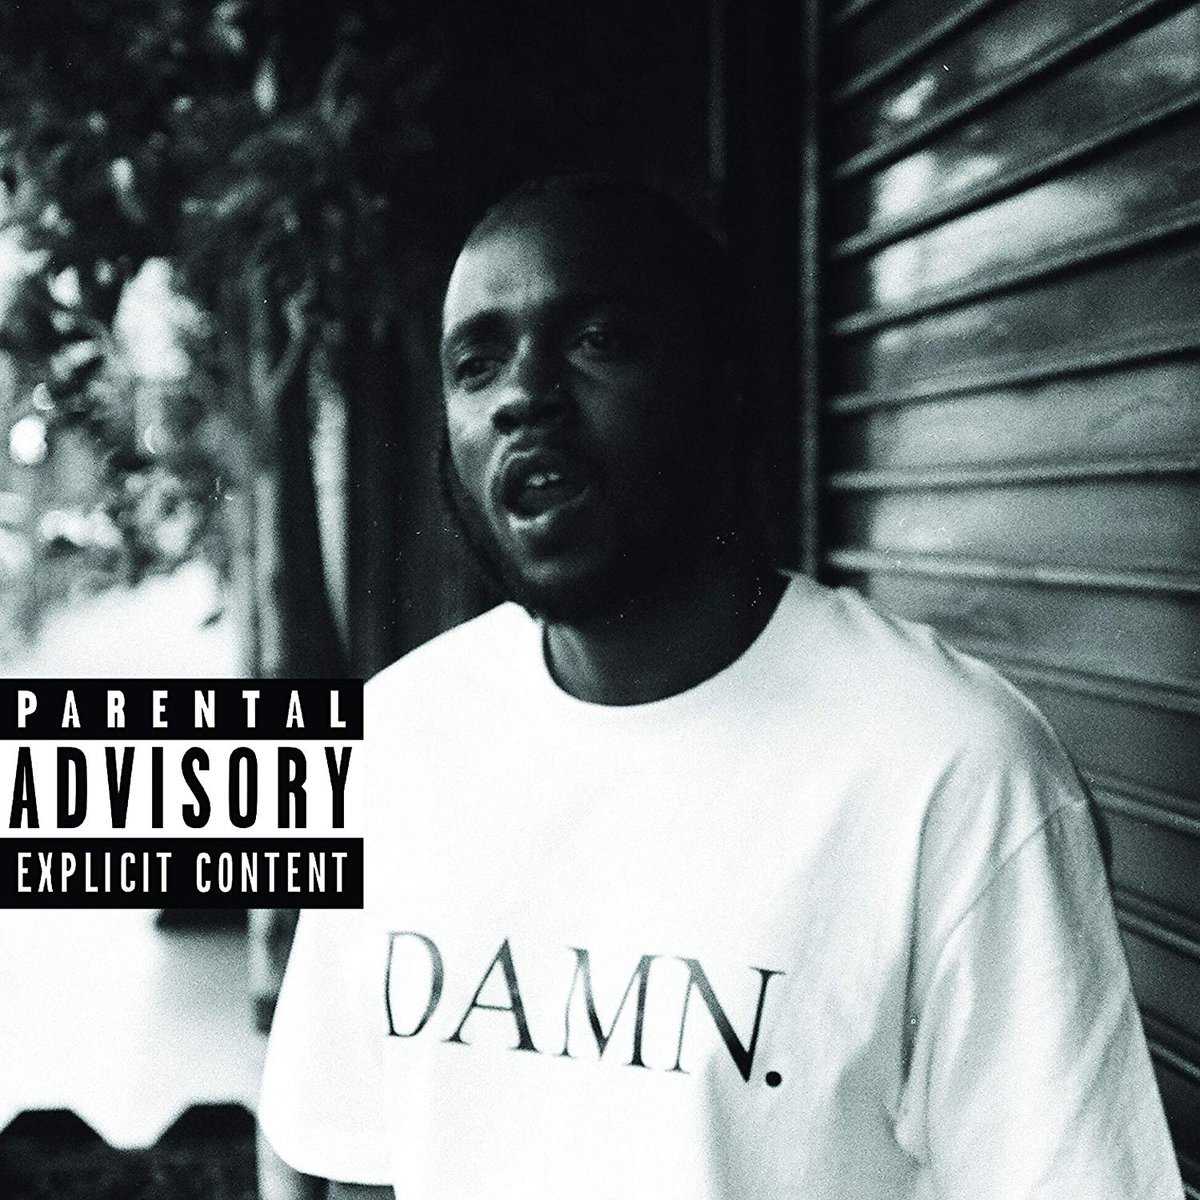 Le grand retour de King Kendrick est arrivé en 2017, deux après le succès mondiale de « To Pimp a Butterfly », il revient avec un album tranchant, plus commerciale et accessible sur la forme, mais qui doit se lire a plusieurs niveau pour être réellement compris.